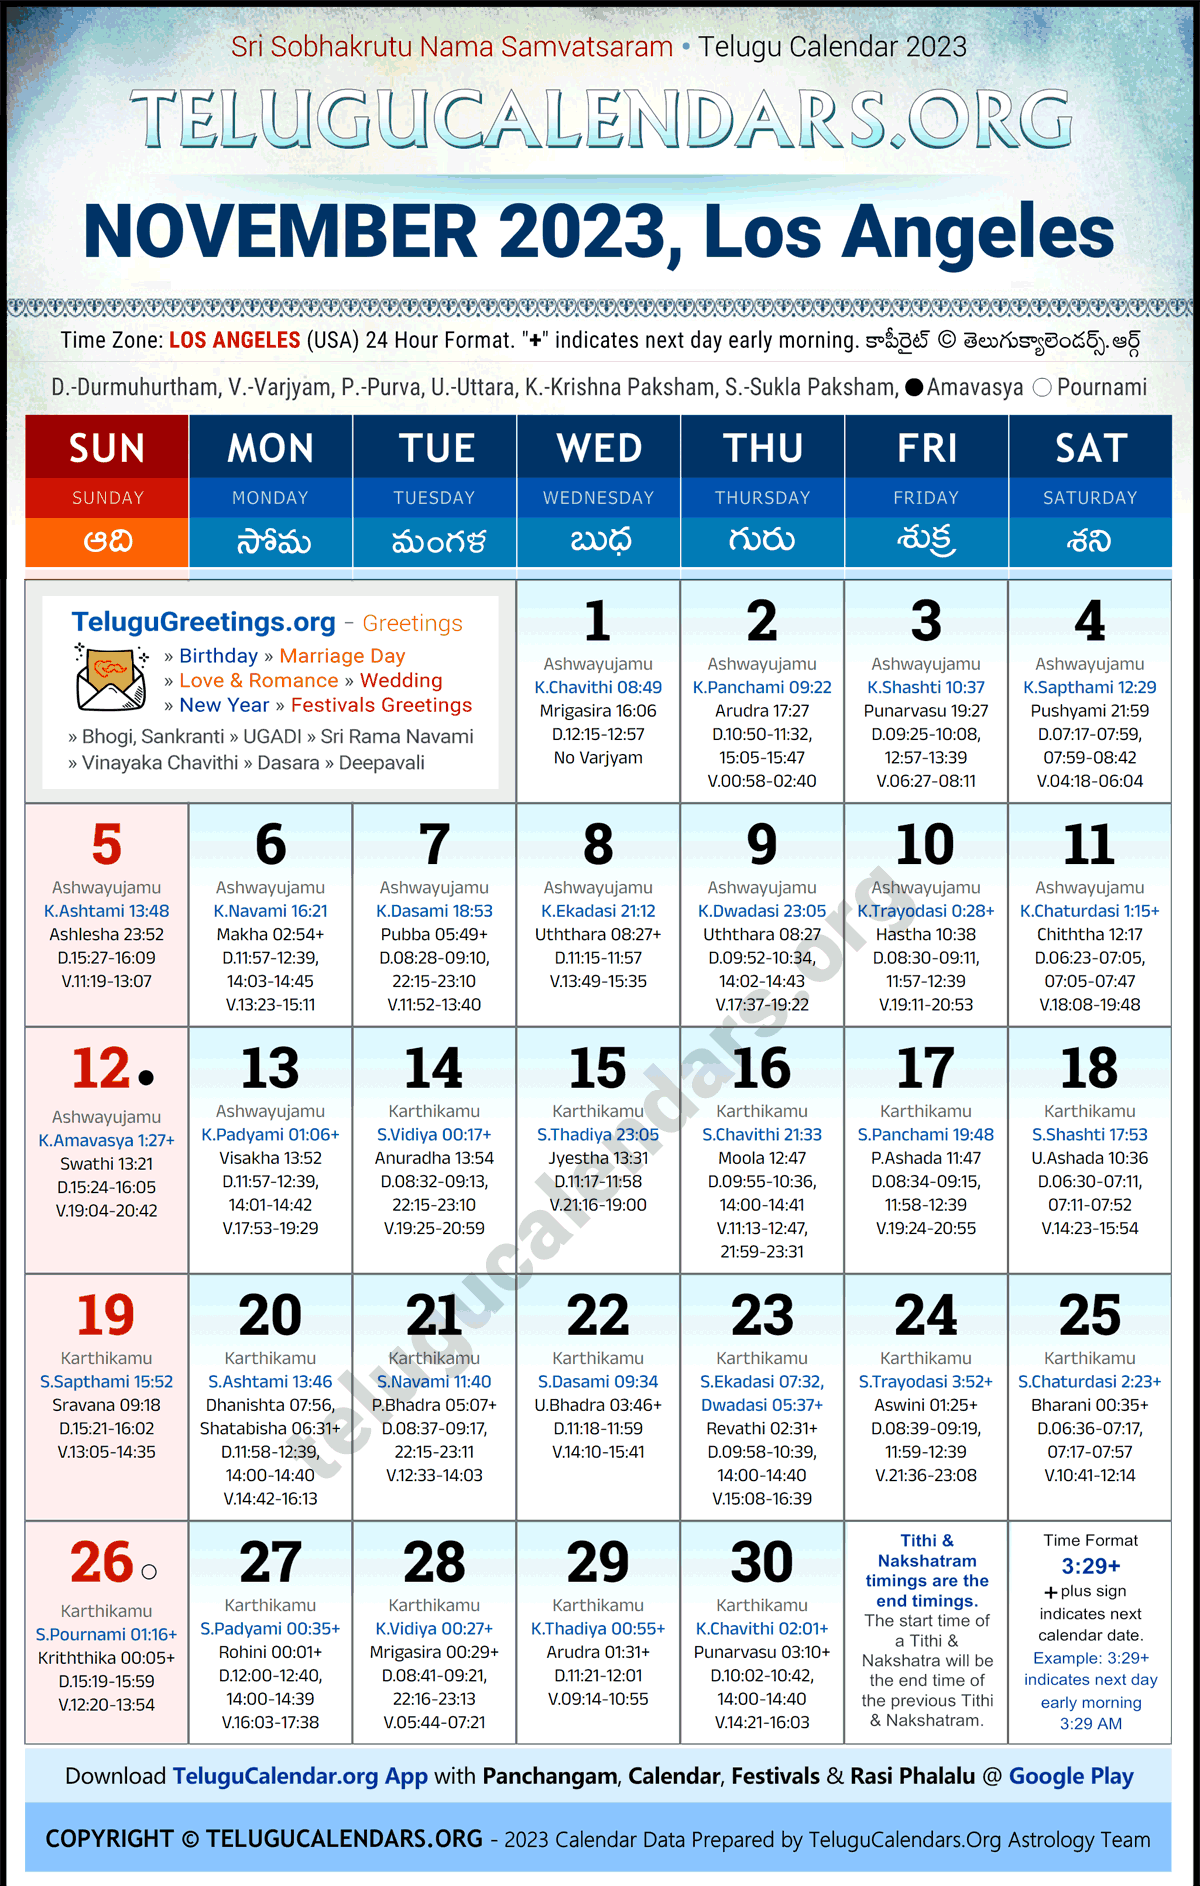 Telugu Calendar 2023 November Festivals for Los Angeles